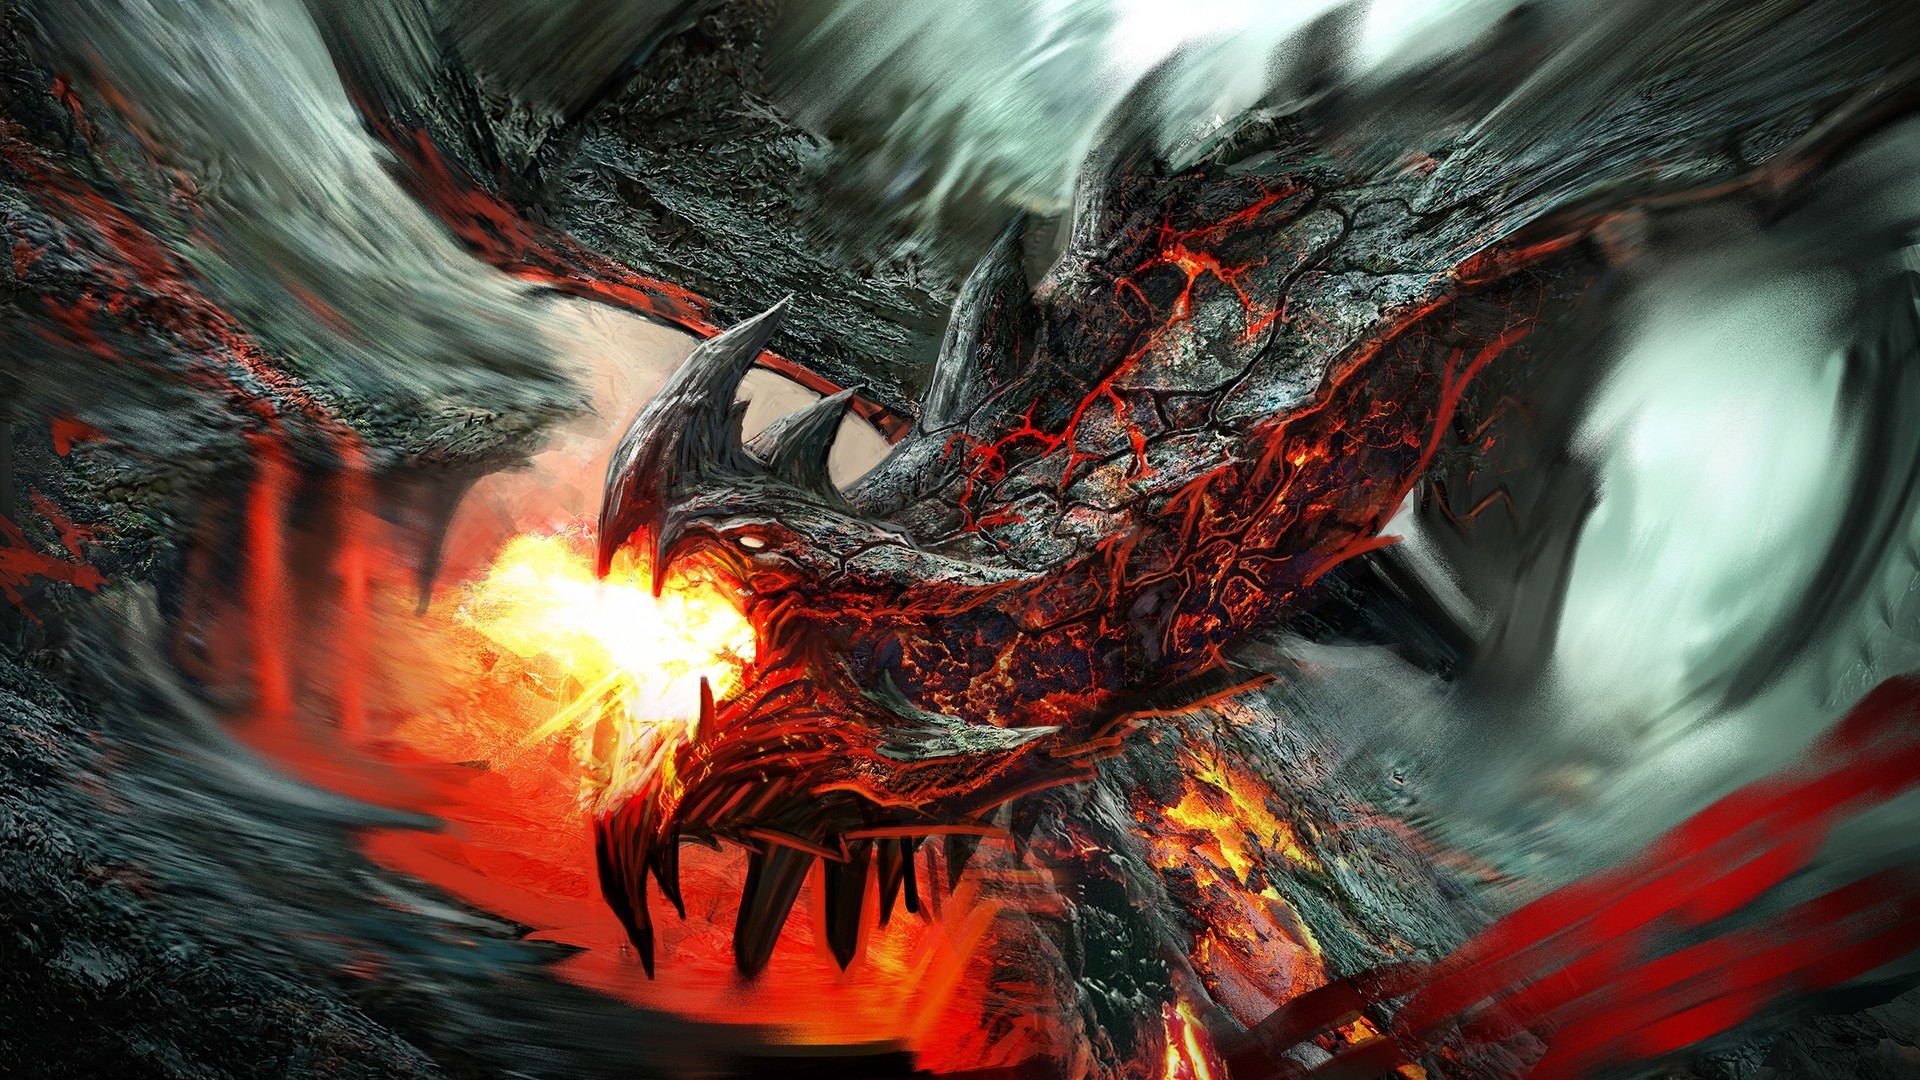 Fire Lava Dragon